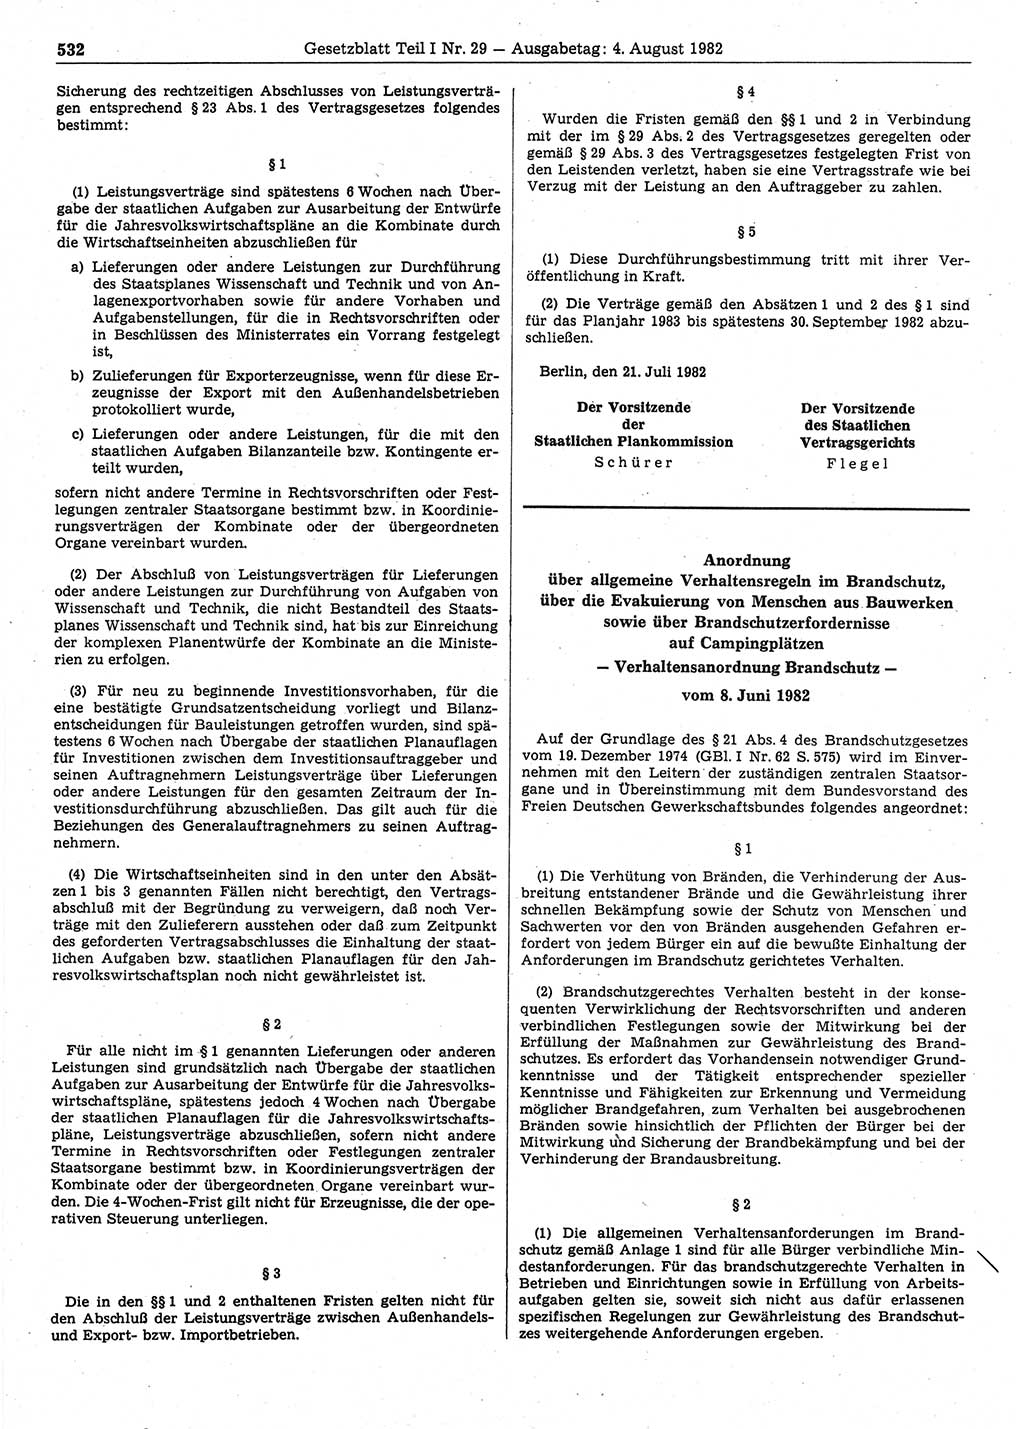 Gesetzblatt (GBl.) der Deutschen Demokratischen Republik (DDR) Teil Ⅰ 1982, Seite 532 (GBl. DDR Ⅰ 1982, S. 532)